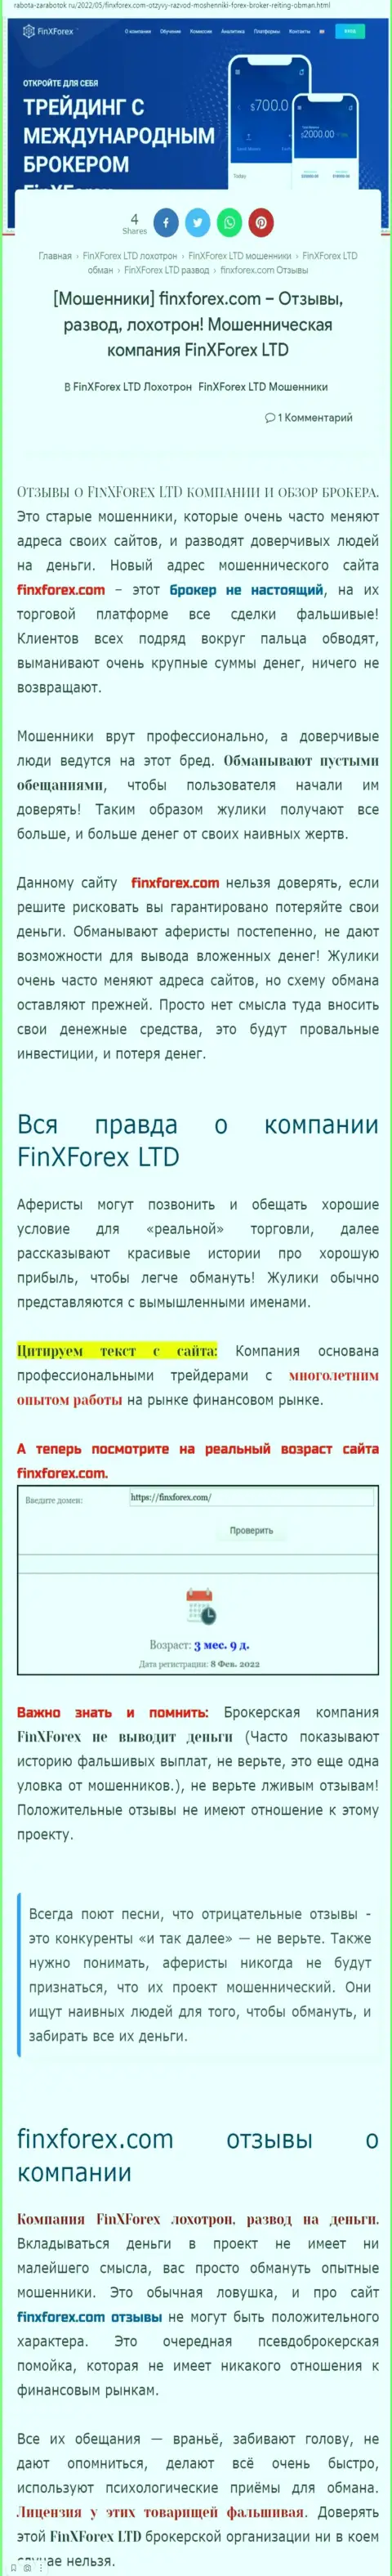 Создатель обзорной статьи об FinXForex утверждает, что в компании FinXForex LTD разводят